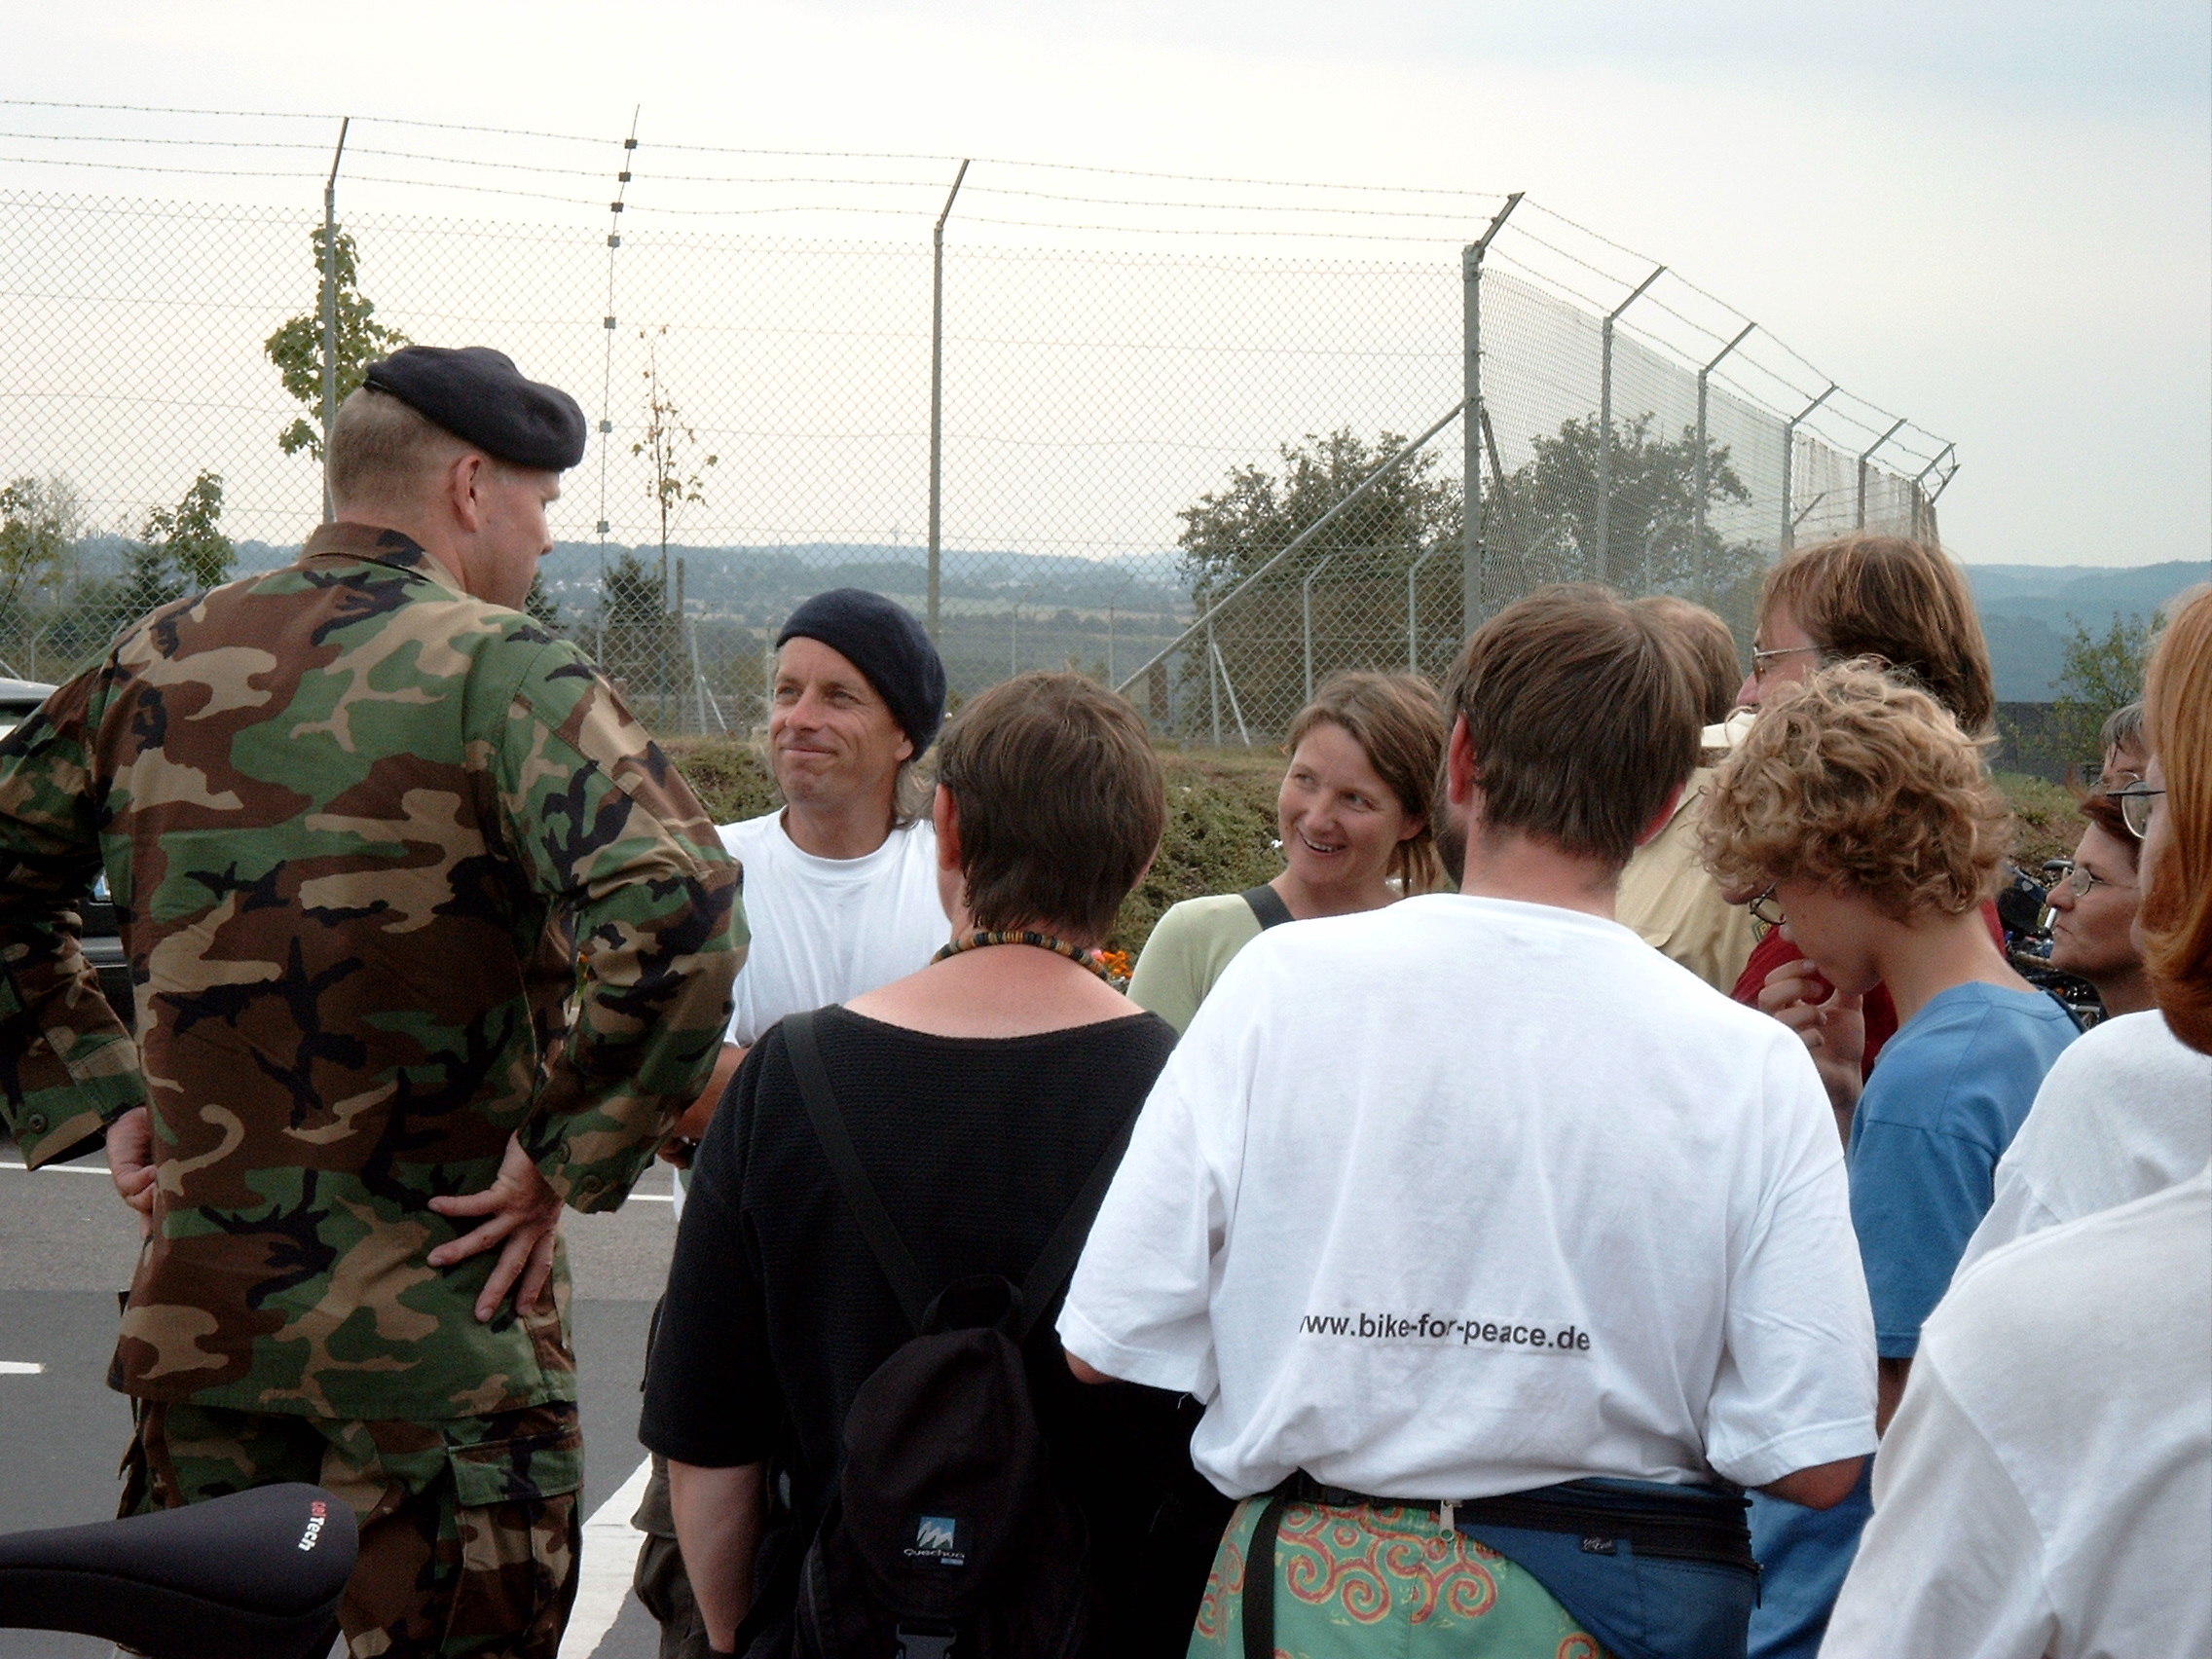 John LaForge (hier ein Bild vom Friedenssommer 2003!) neben ihm Marion Küpker drang mit weiteren menschen der amerikanischen Friedensbewegung auf das Gelände des Fliegerhorsts Büchel vor.